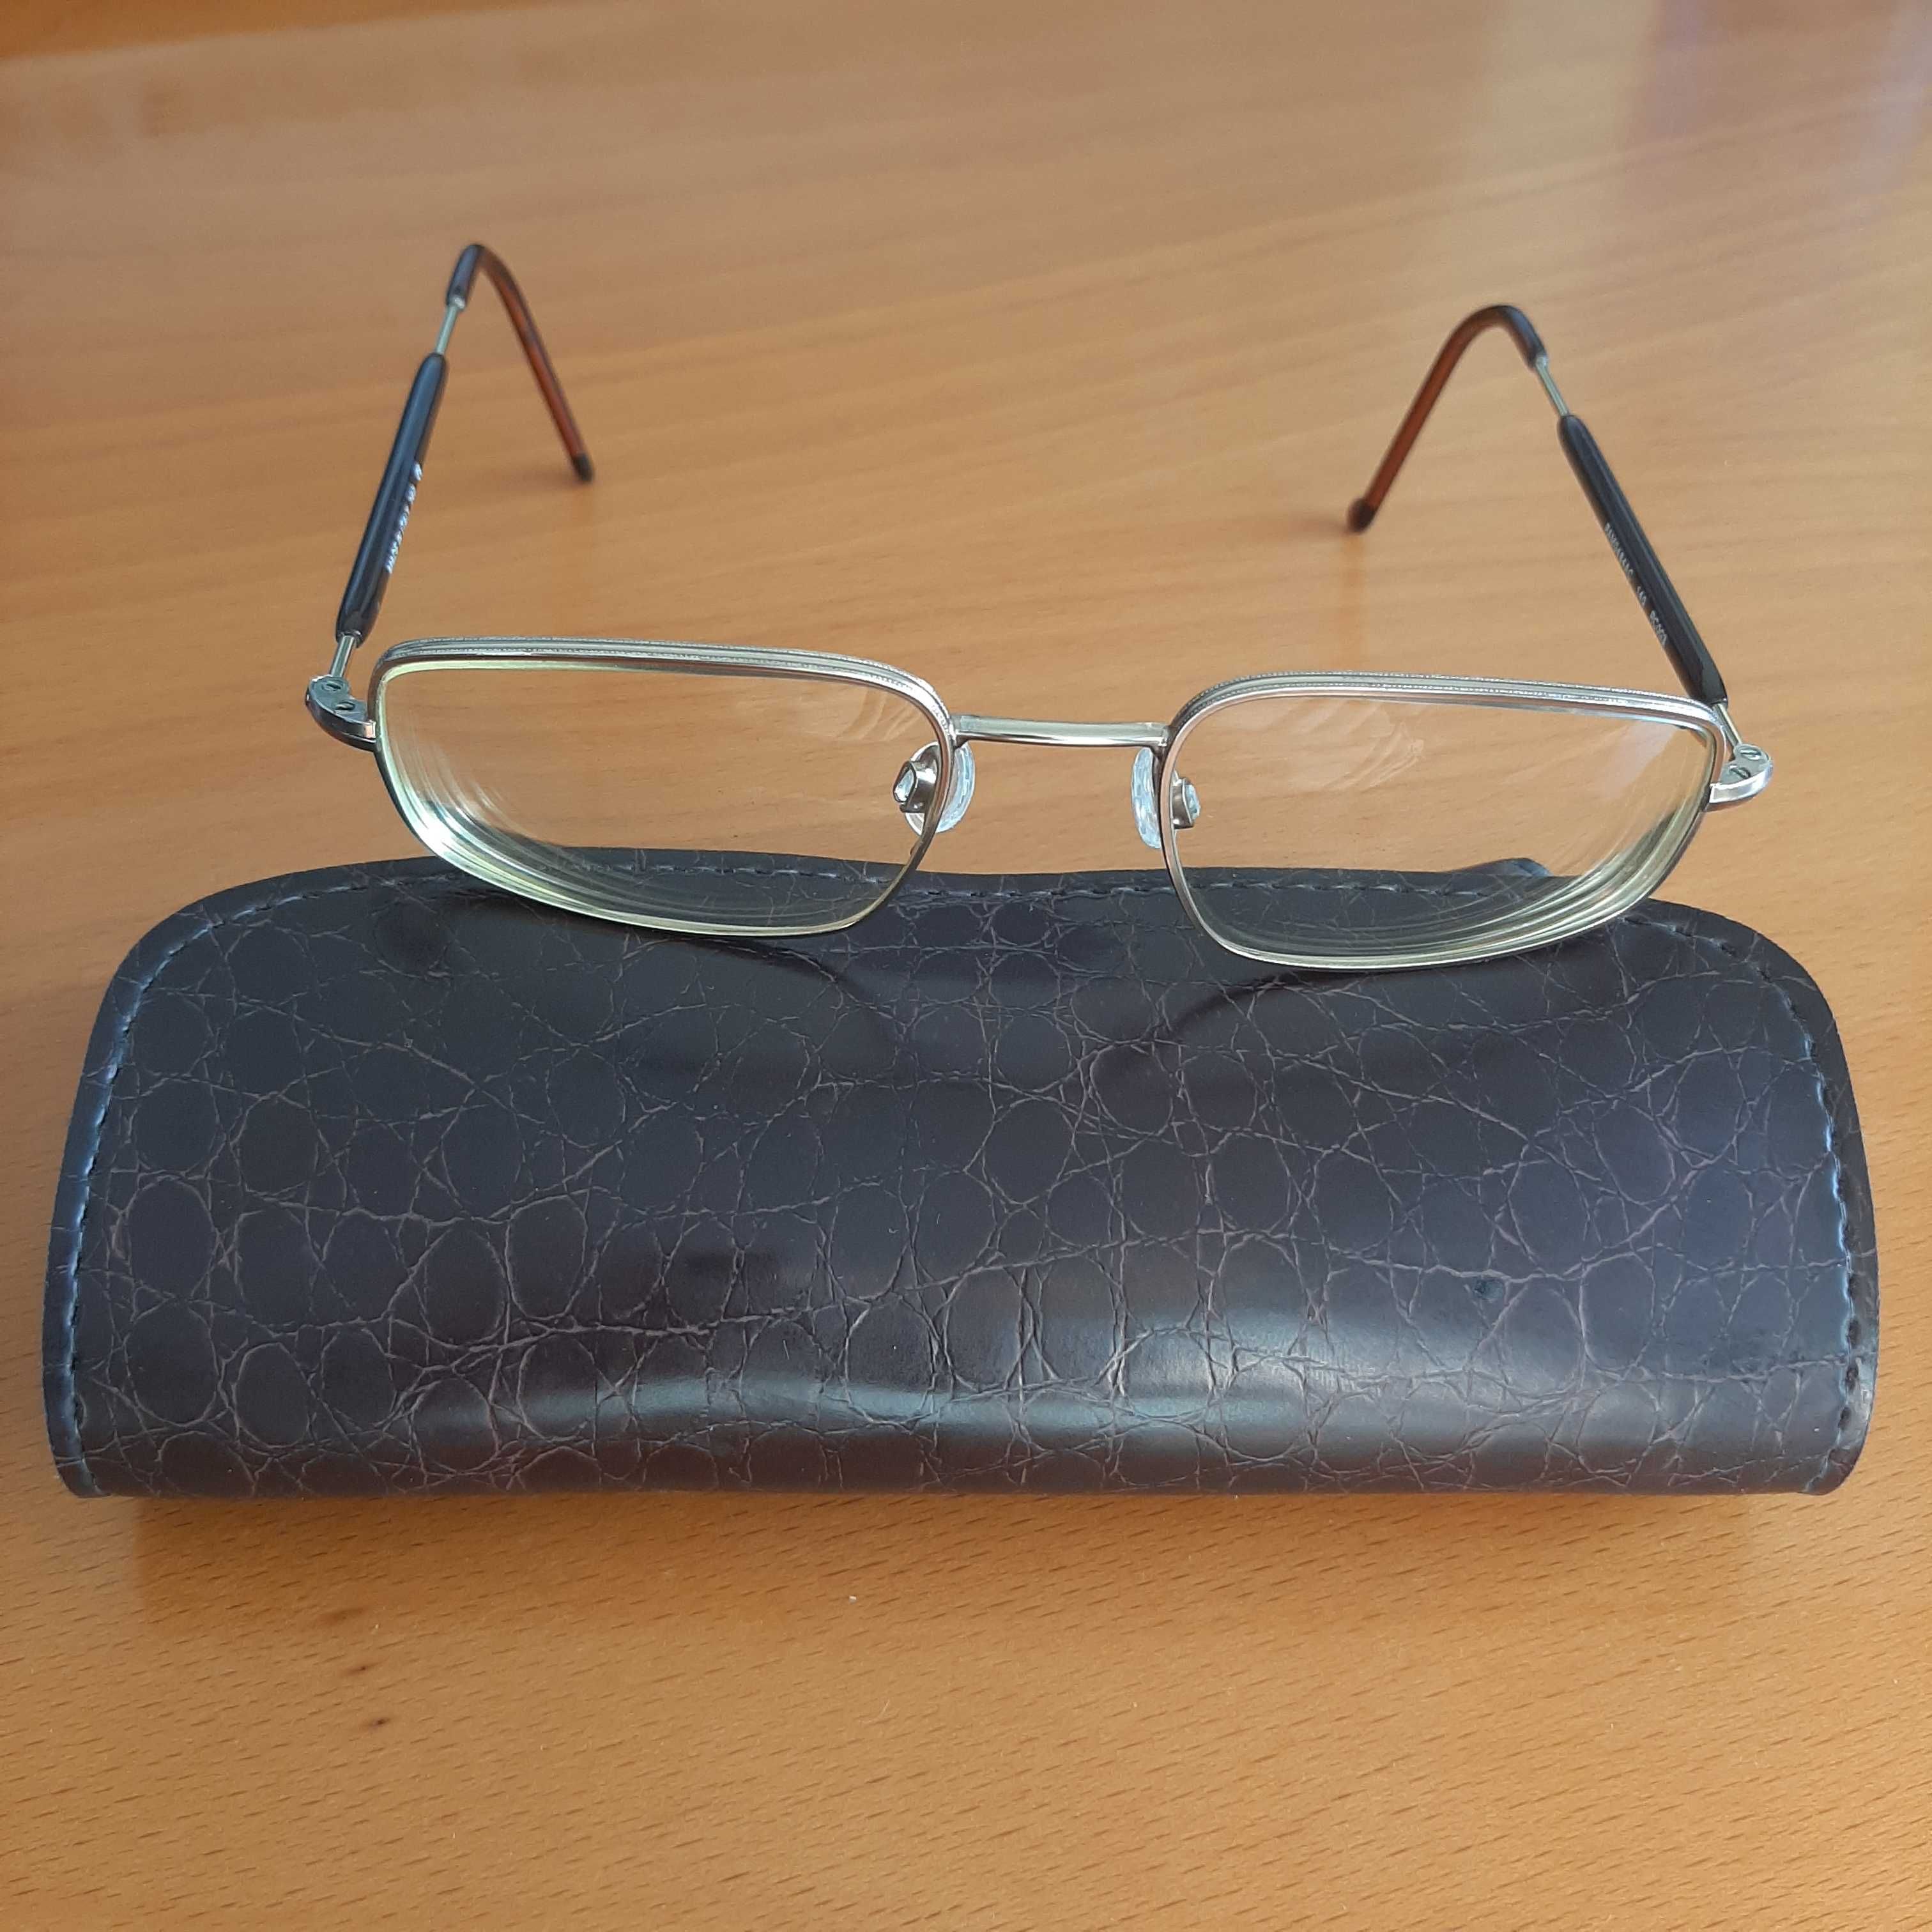 Armação de óculos Giorgio Armani